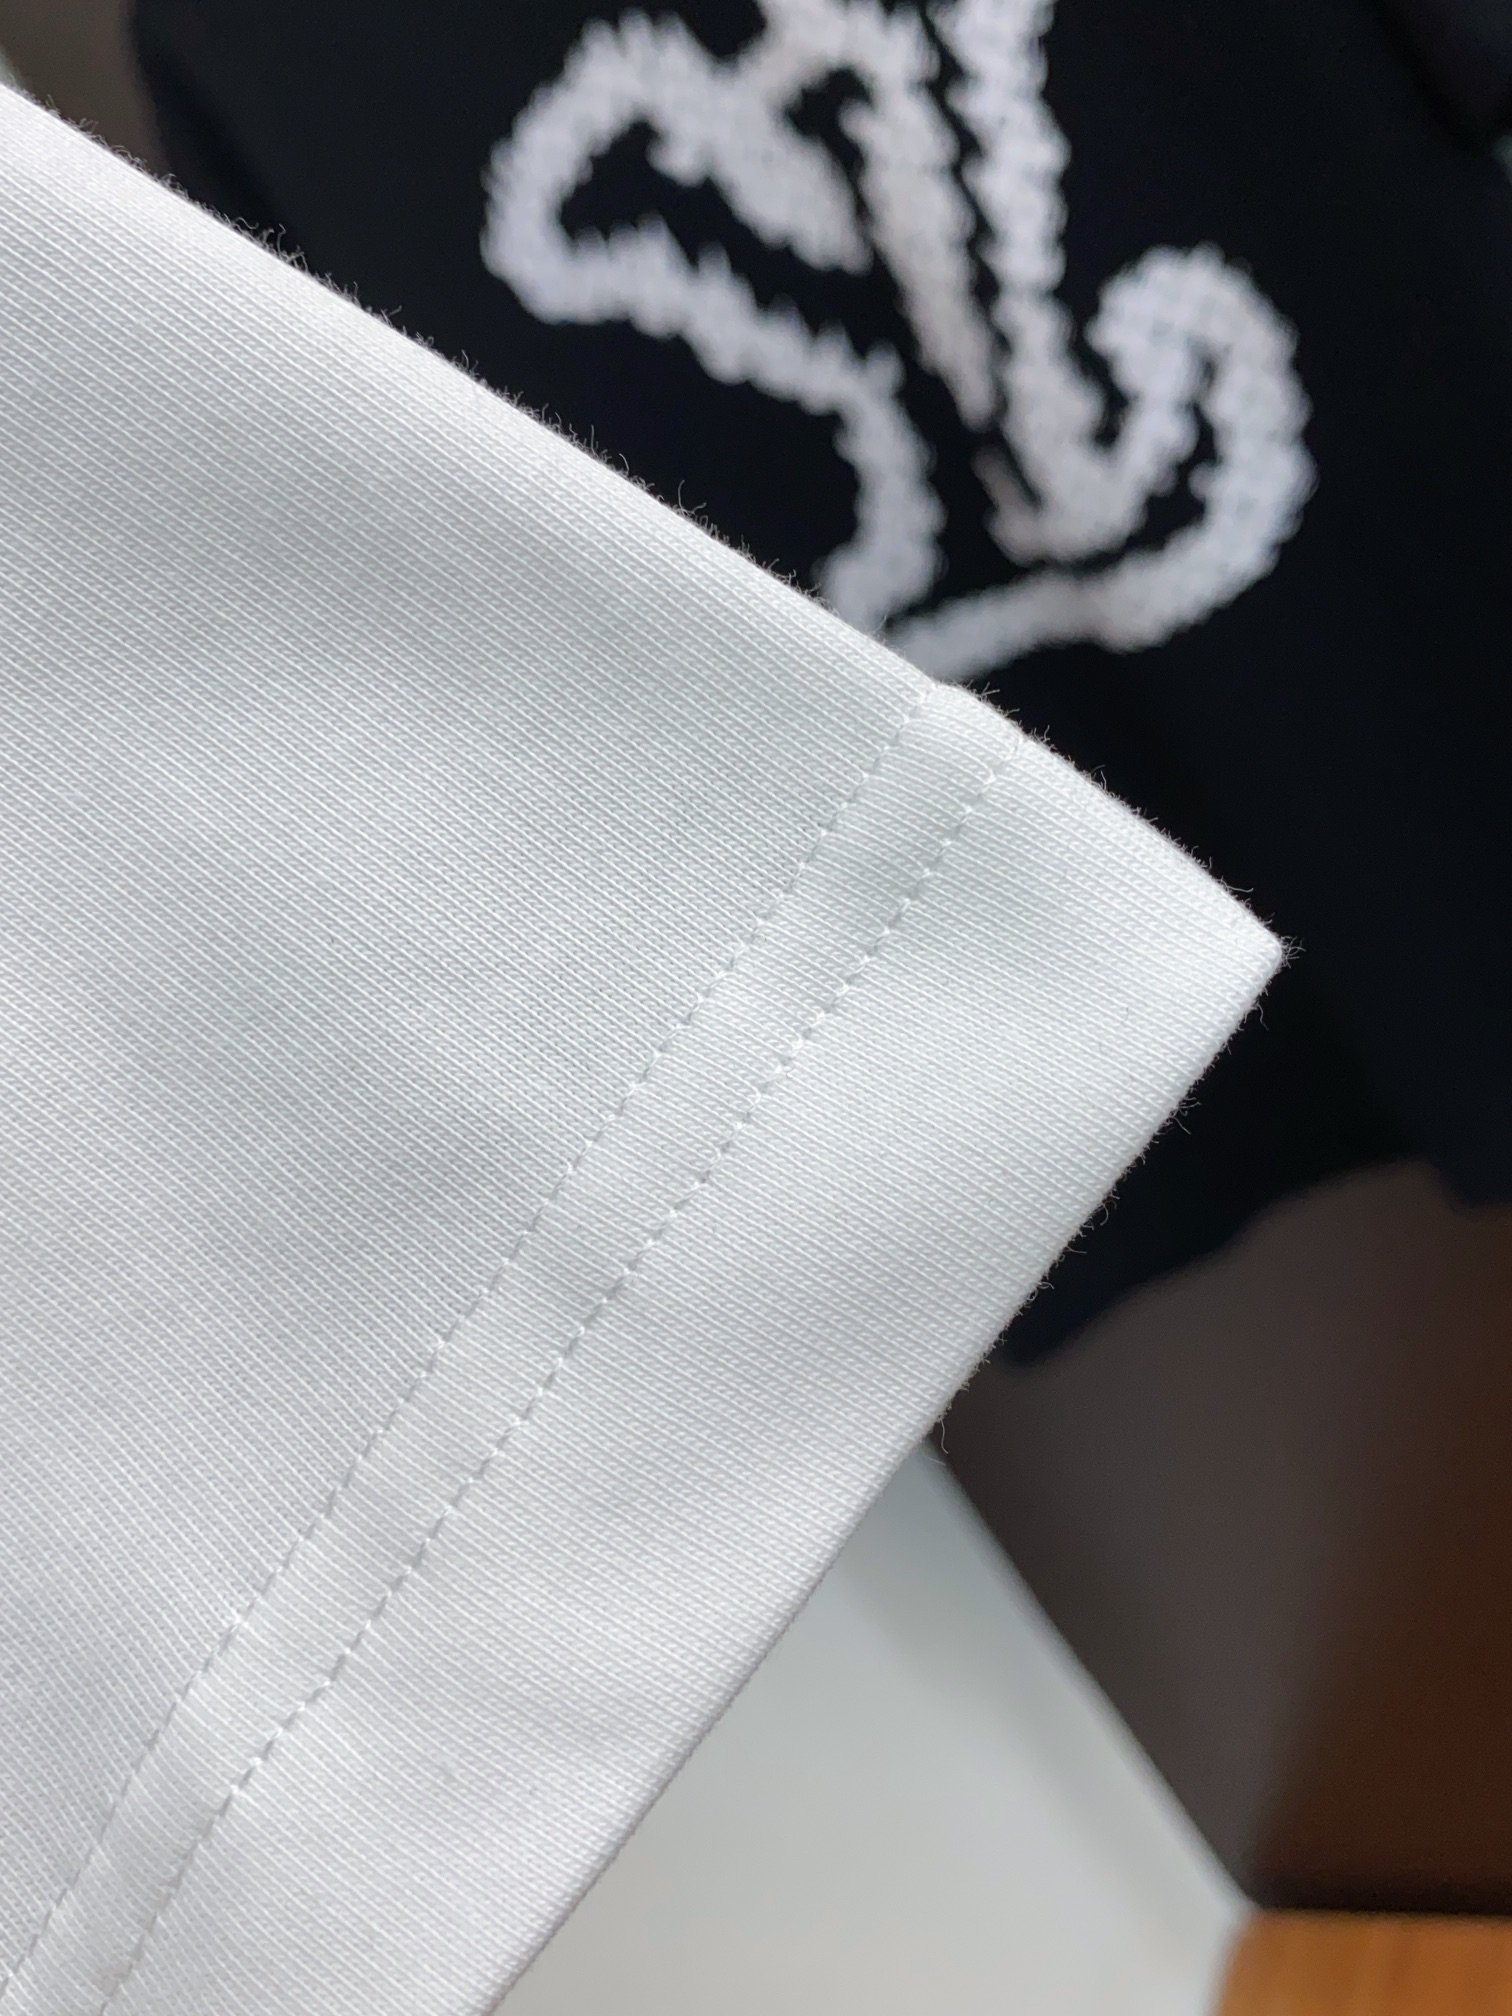 v路易威登24ss新款印花logo圆领短袖T恤新季元素彰显演绎品牌辨识度定制高支丝光棉面料上身舒适透气面